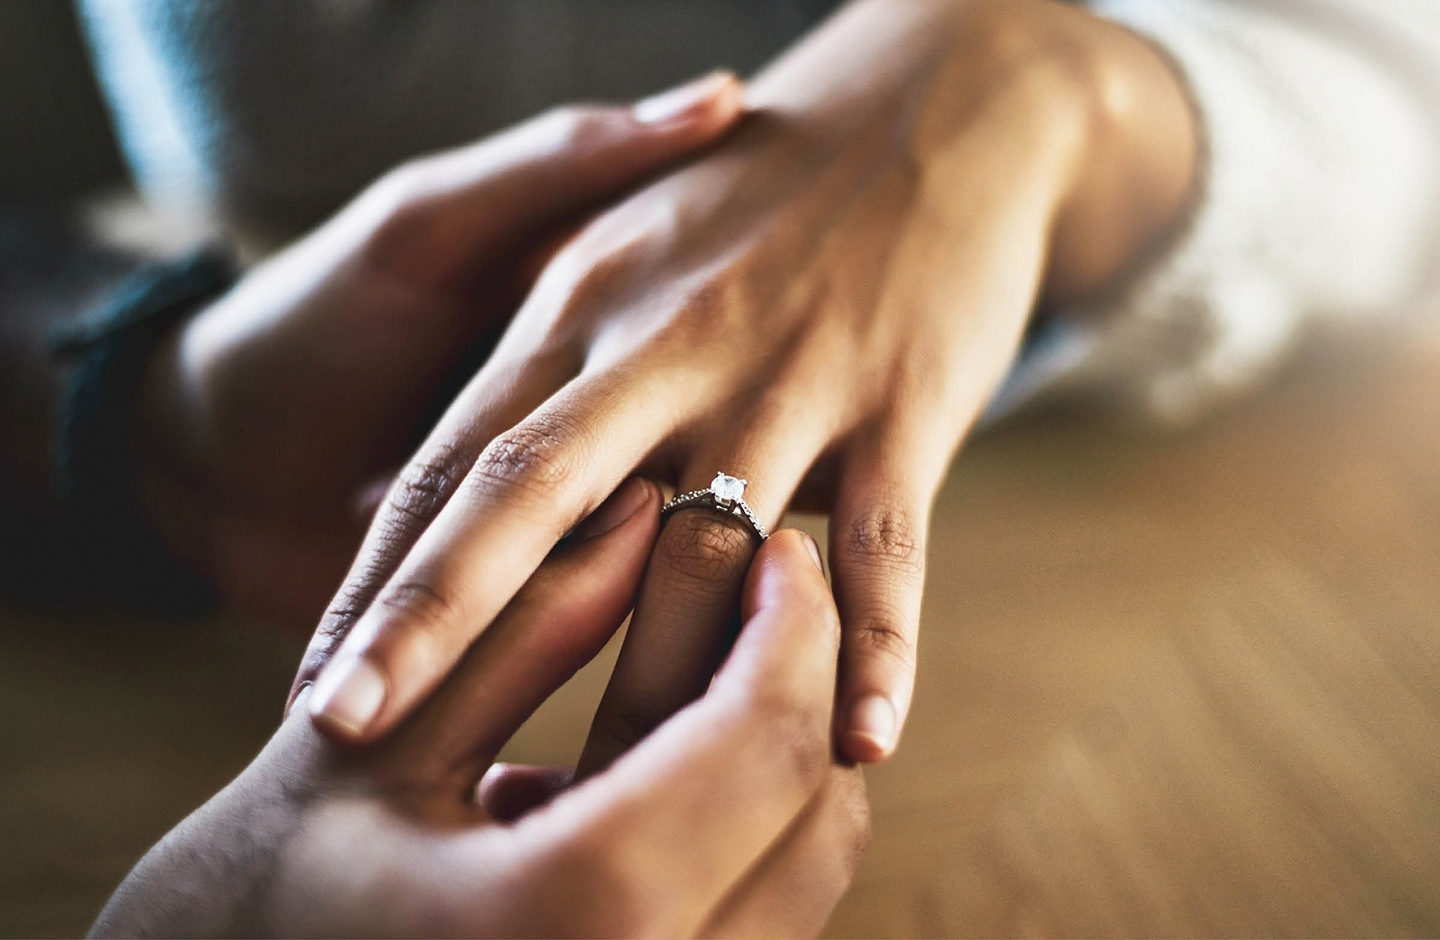 Detailaufnahme von zwei Händen, wie der Mann der Frau einen Ring and den Finger steckt. 